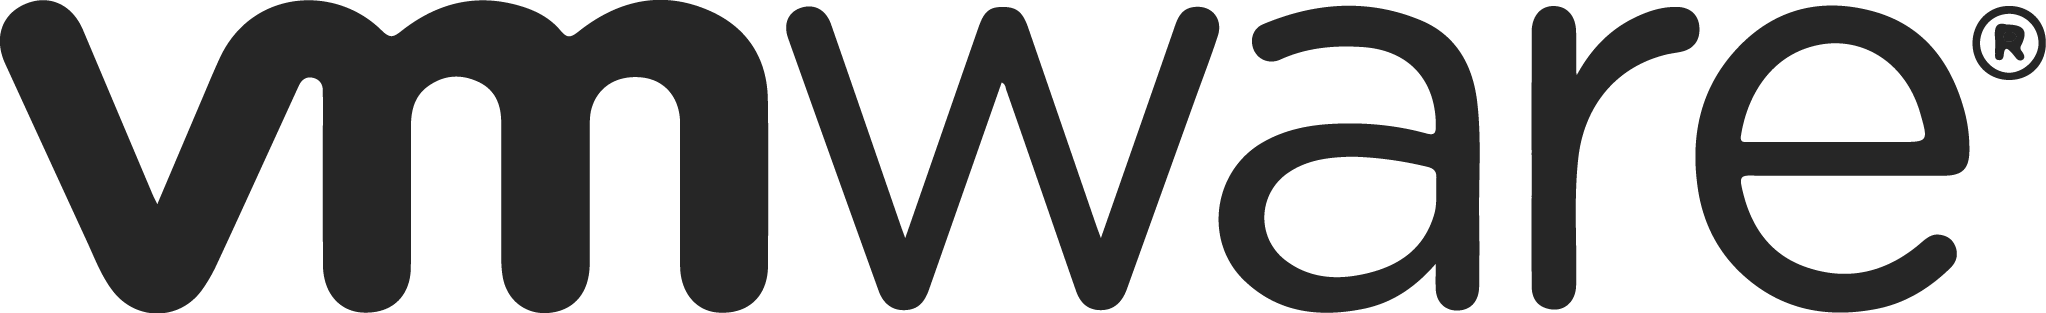 VMware-logo